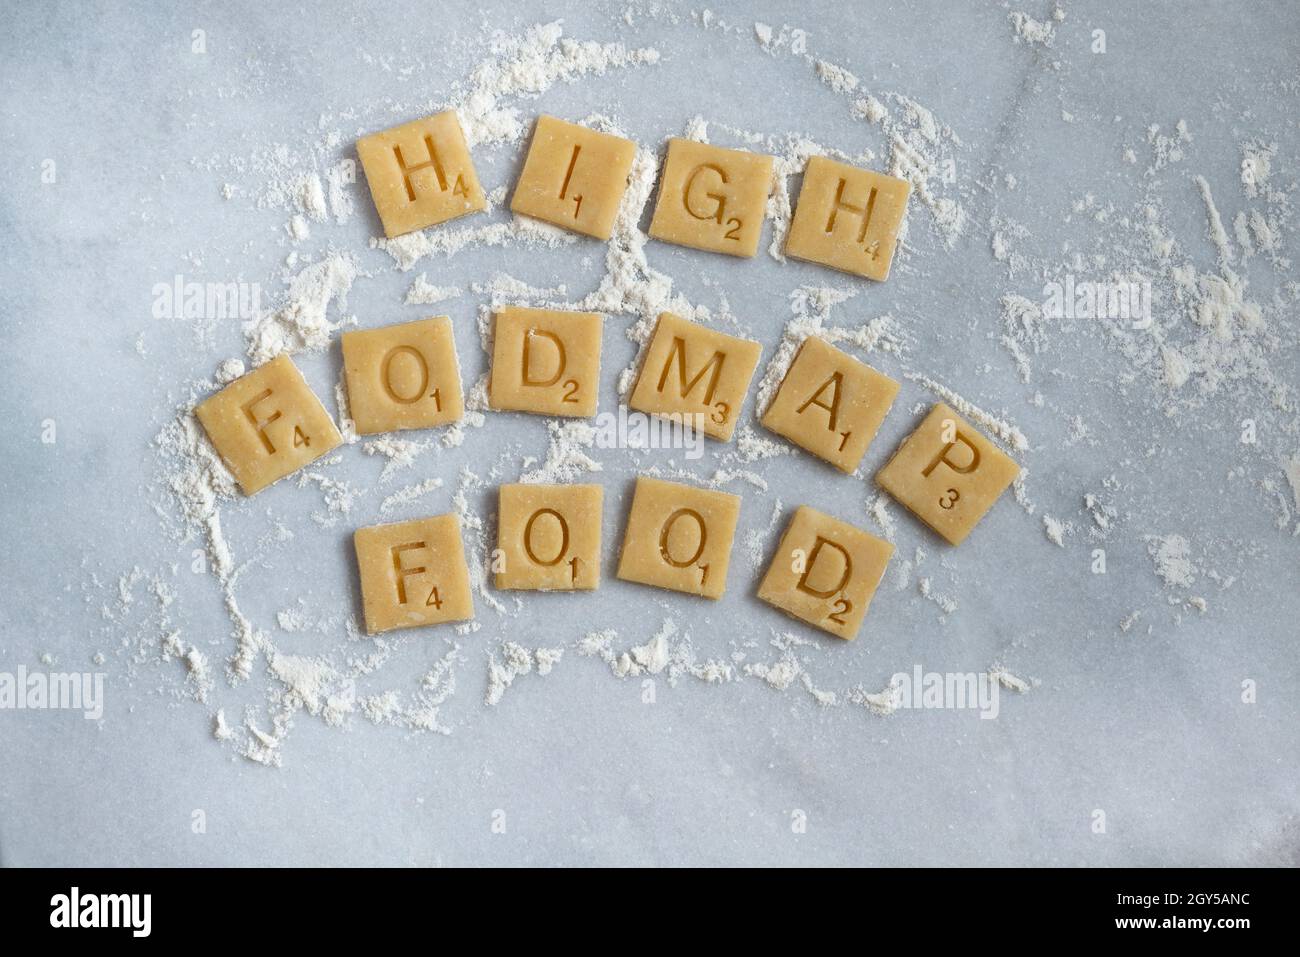 Carrés de pâte de blé qui expliquent « High Fodmap Food ». Banque D'Images